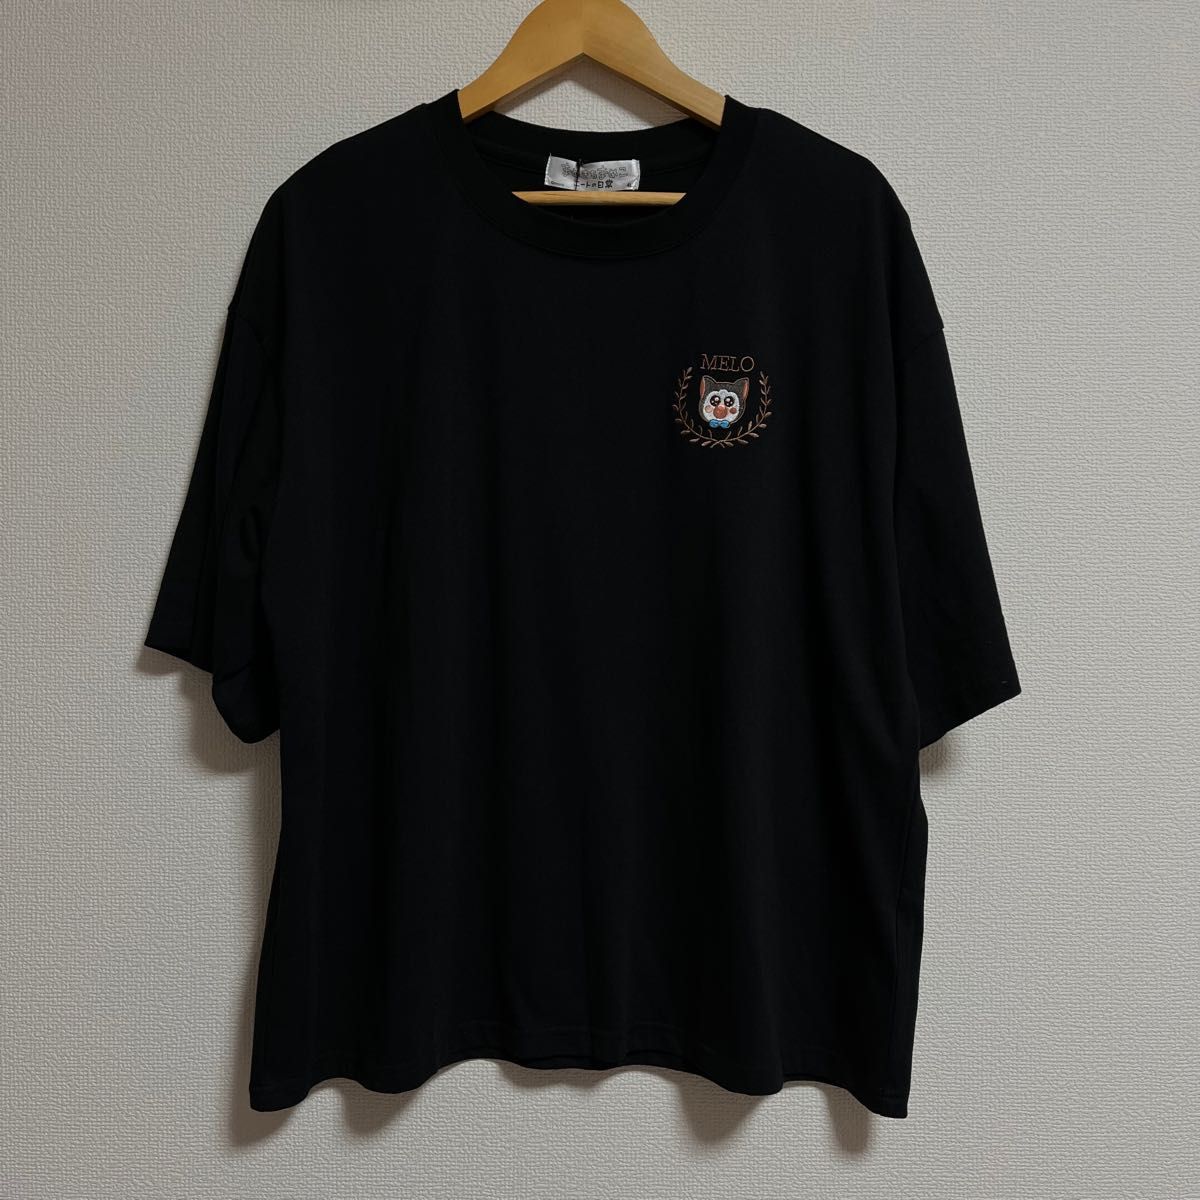 【大きいサイズ】まめきちまめこ メロワンポイント刺繍Tシャツ 半袖 ブラック4L レディース 黒 ニートの日常